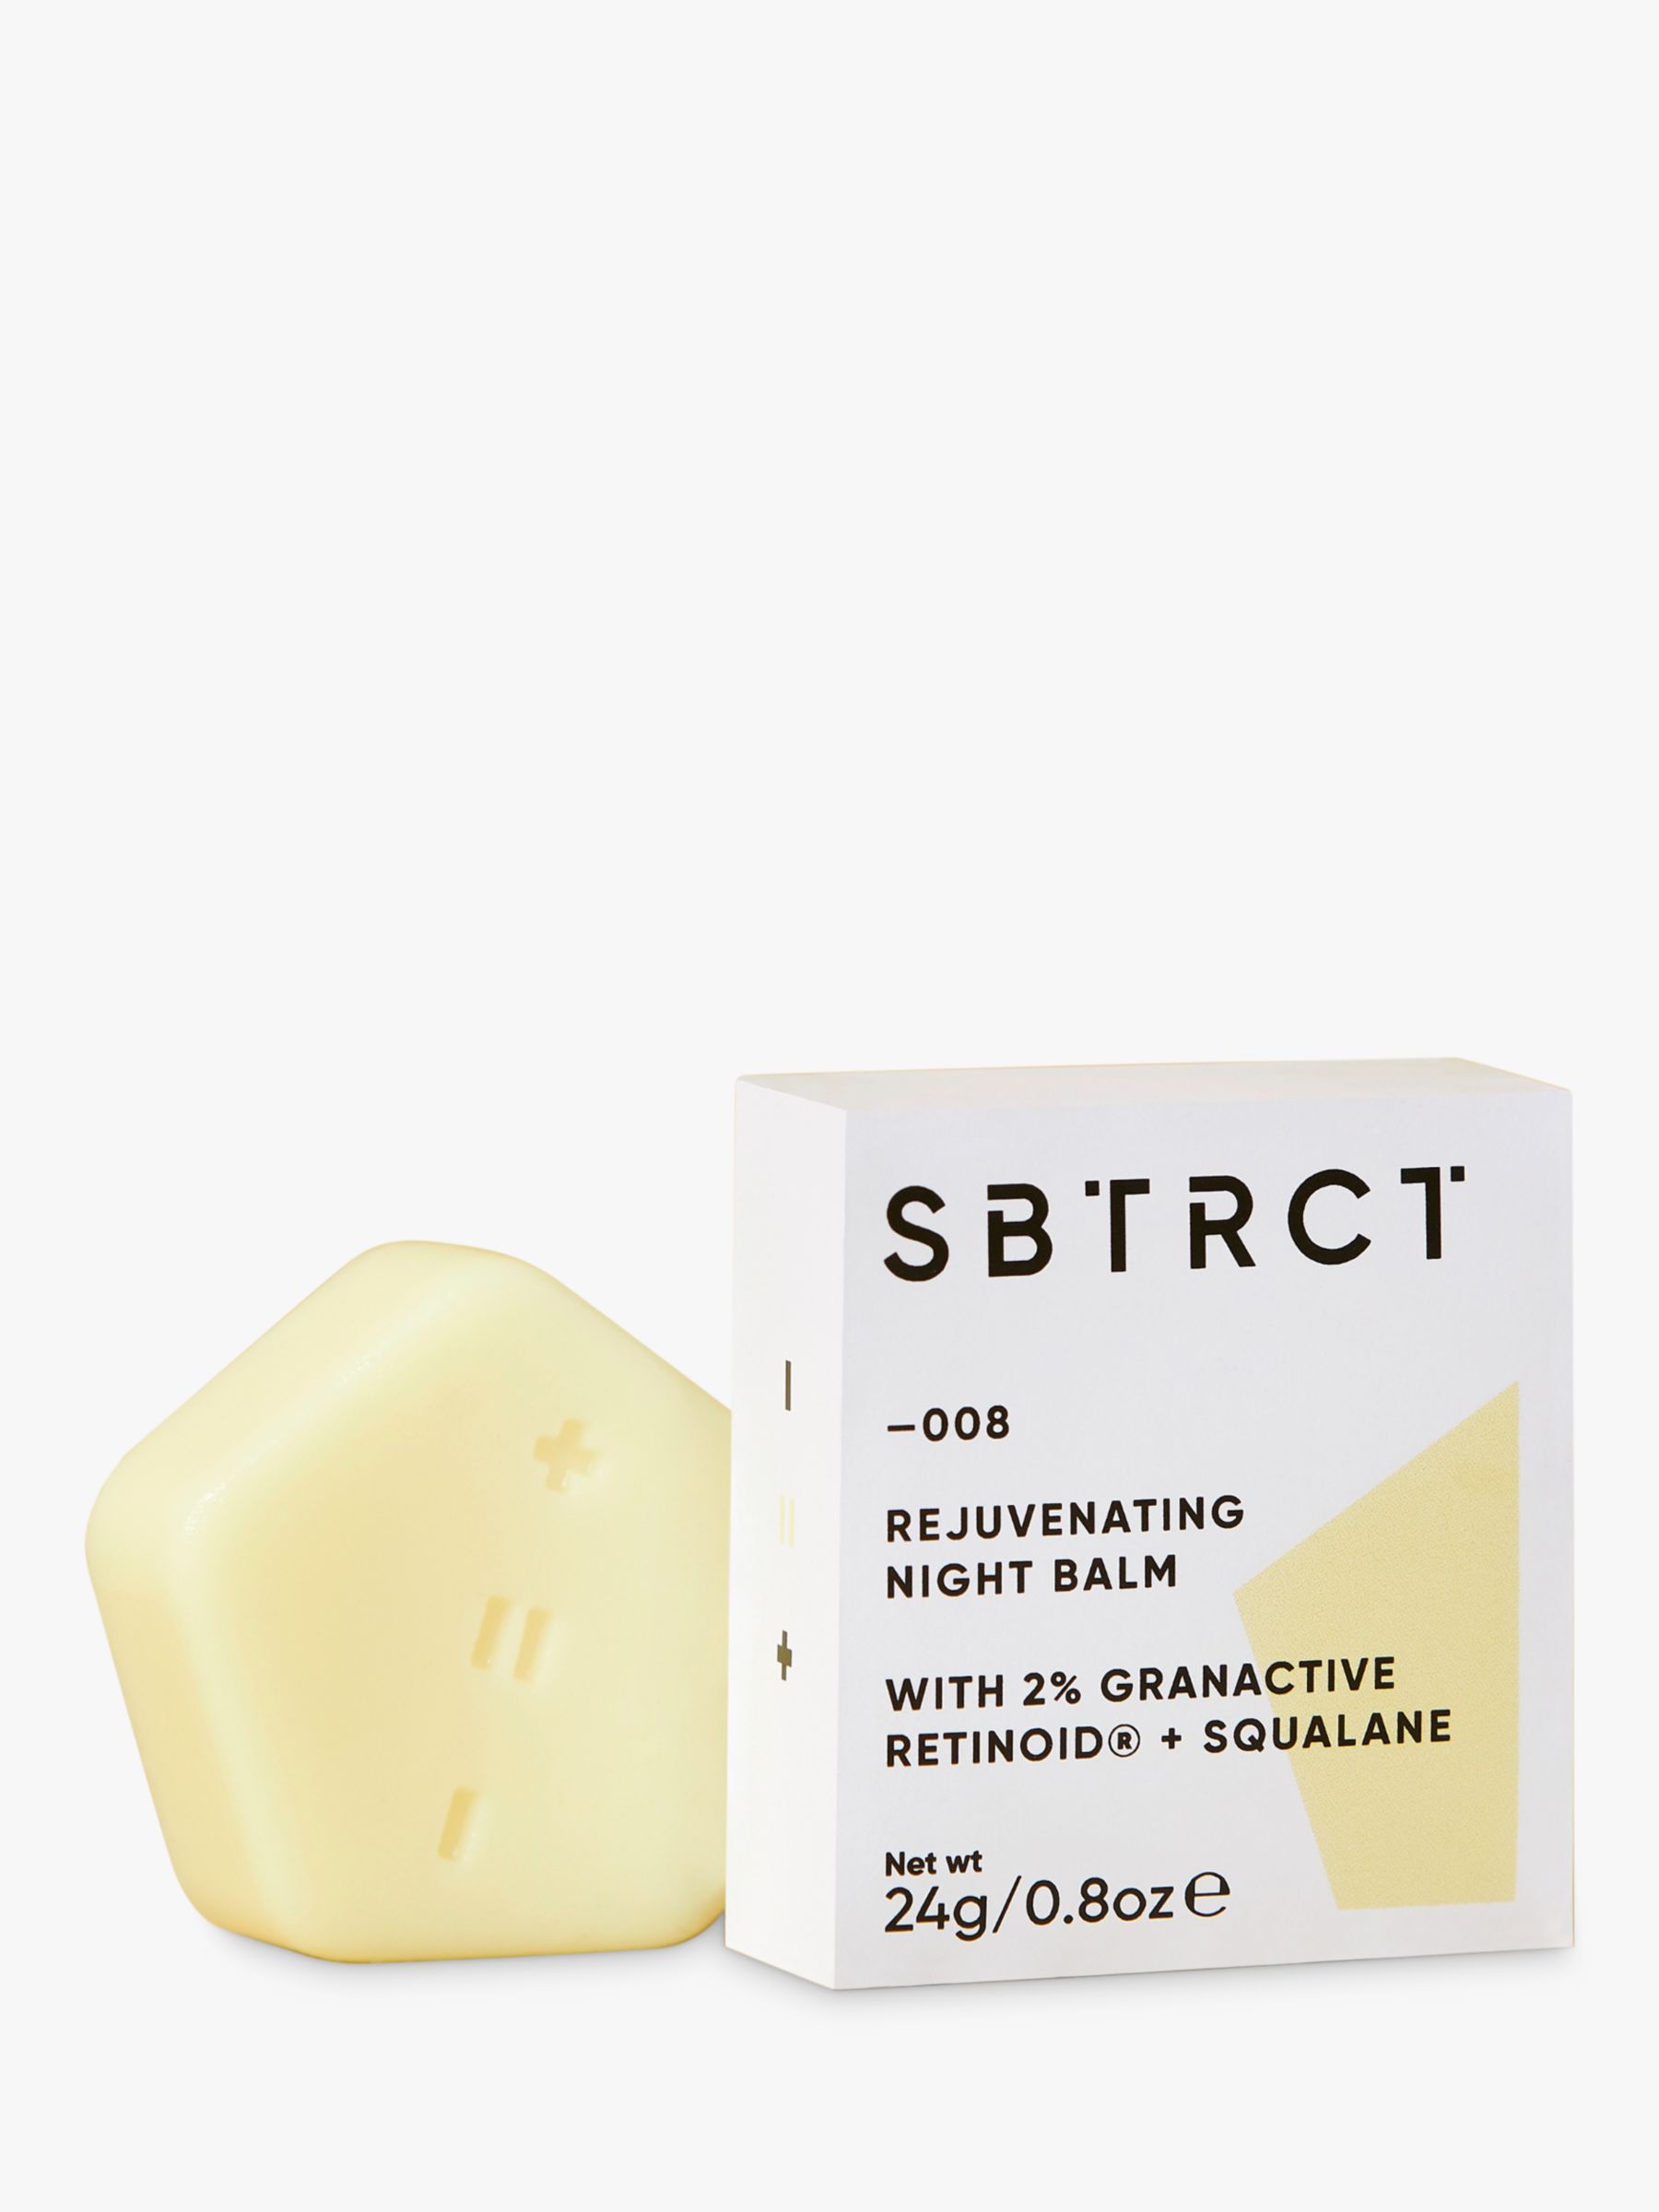 SBTRCT Rejuvenating Night Balm (2% Granactive Retinoid+Sqalane) Refill Bar, 24g 3